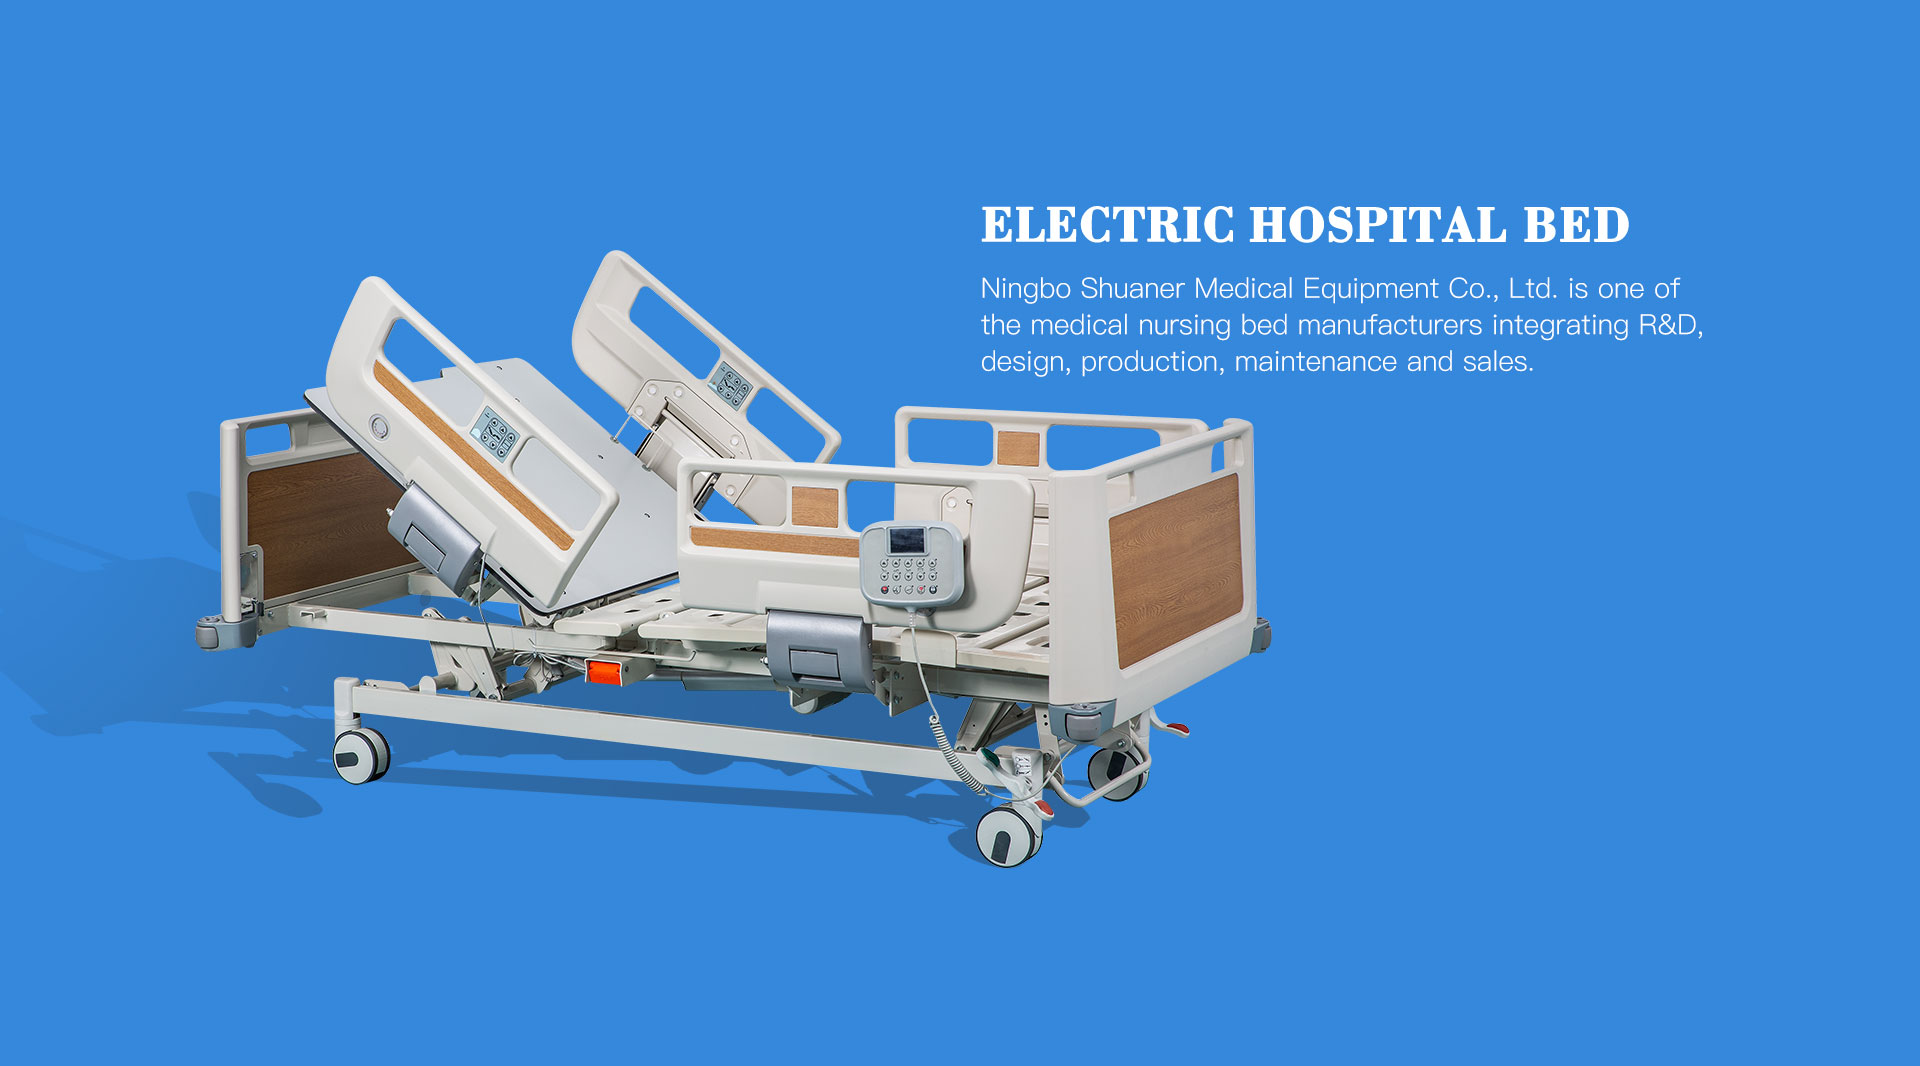 Pięciofunkcyjne elektryczne łóżko szpitalne (RKO)